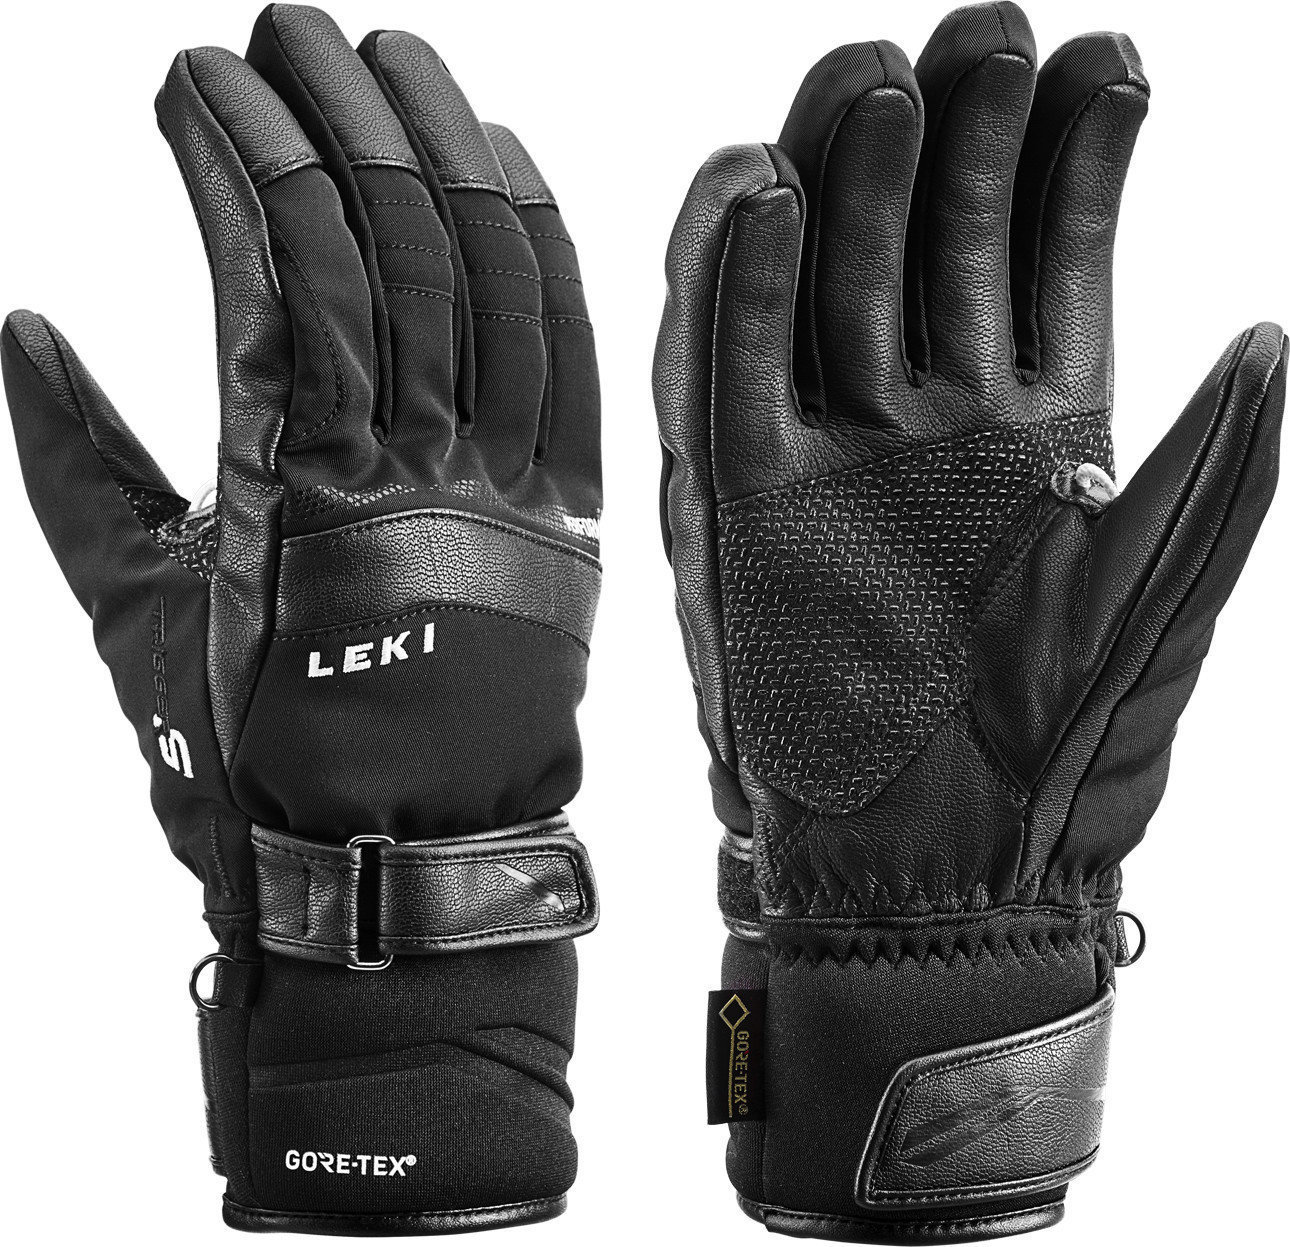 Skijaške rukavice Leki Performance S GTX Black 10 Skijaške rukavice